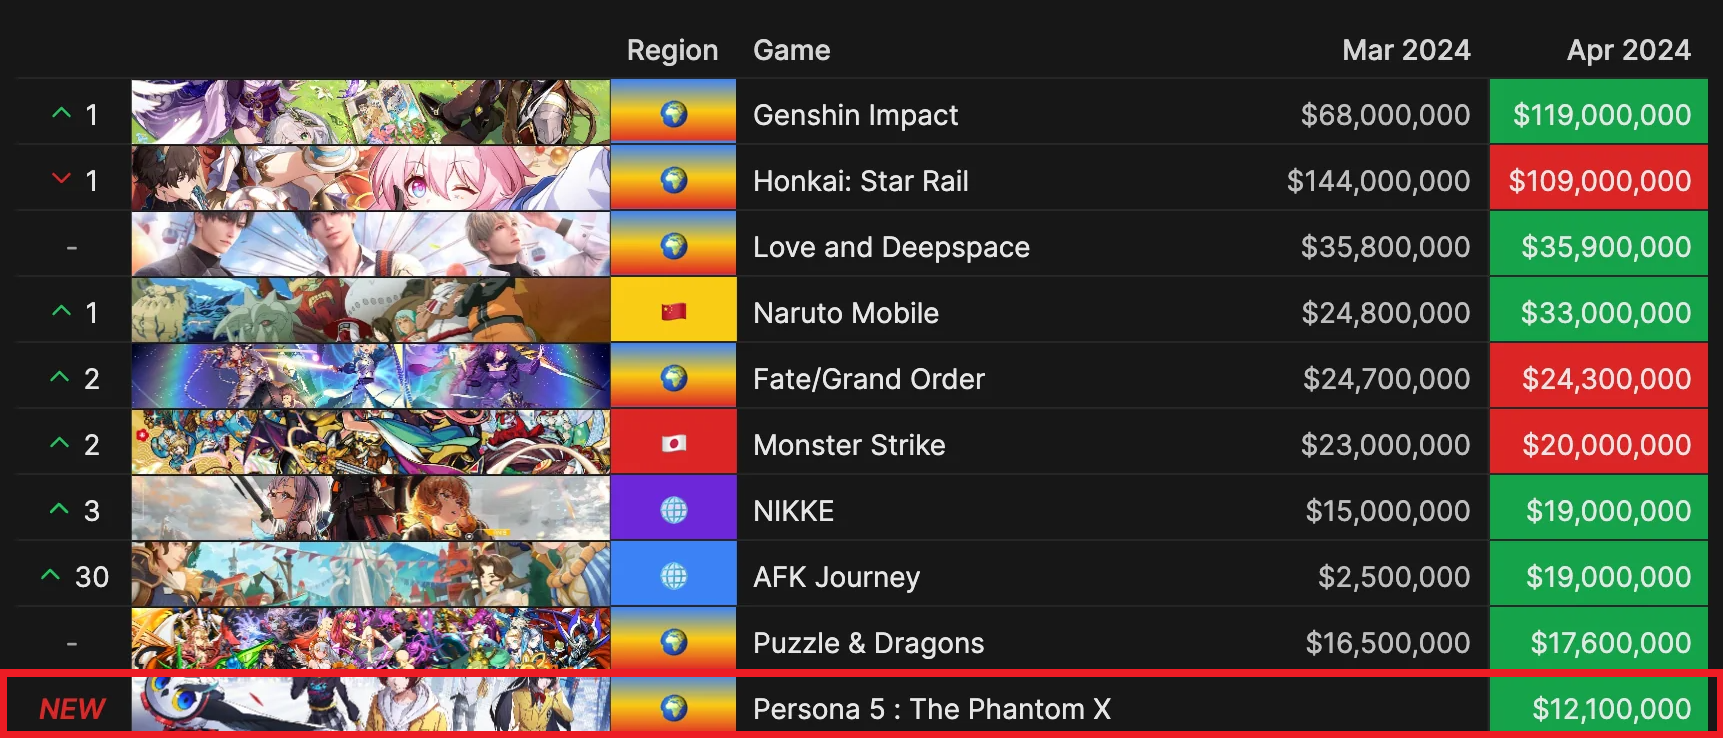 Persona 5: The Phantom X sẽ được phát hành toàn cầu Photo-1715672645849-1715672646166474625113